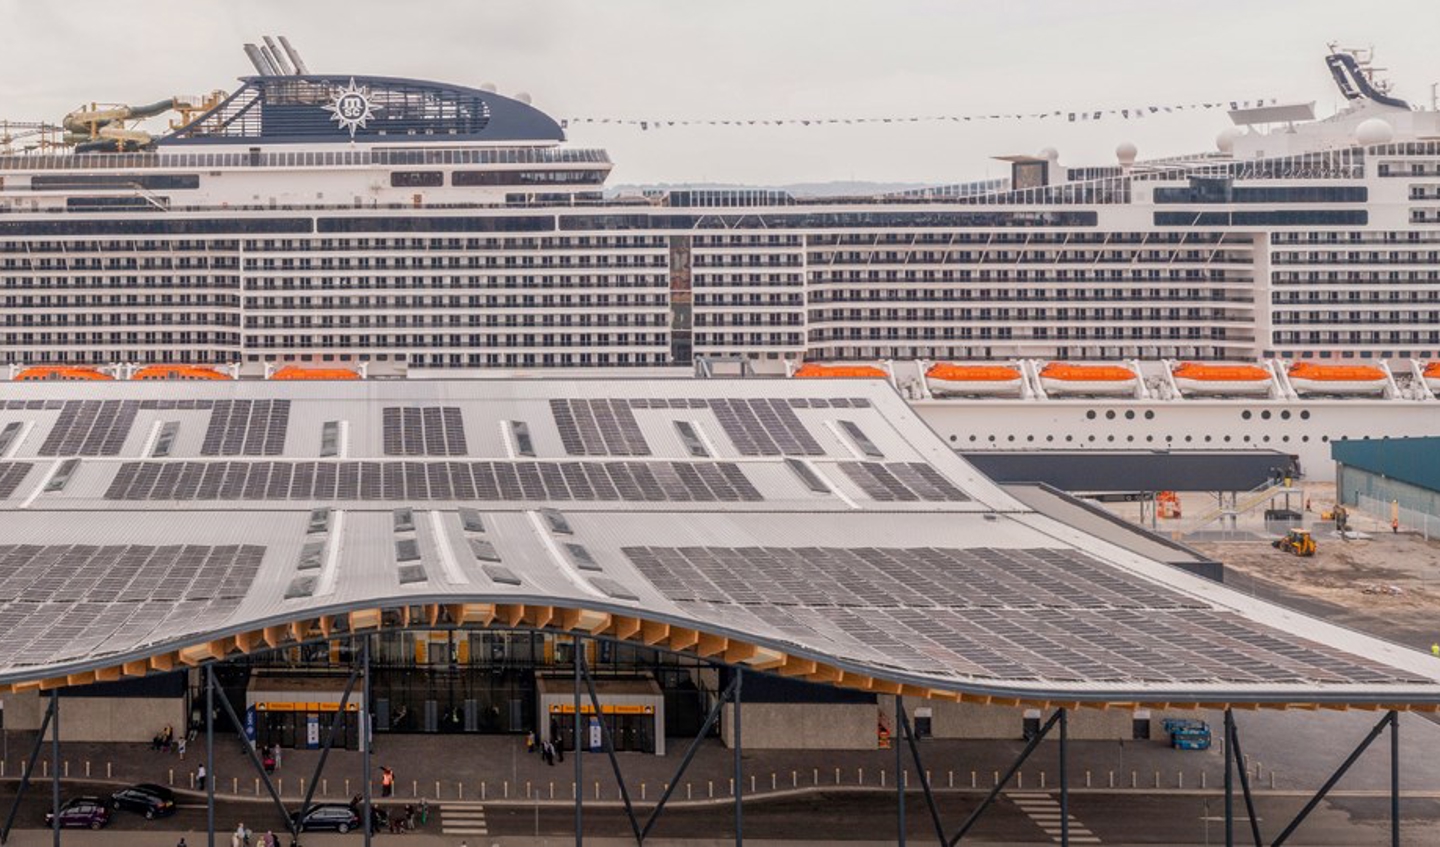 Large cruise ship docked at terminal. 